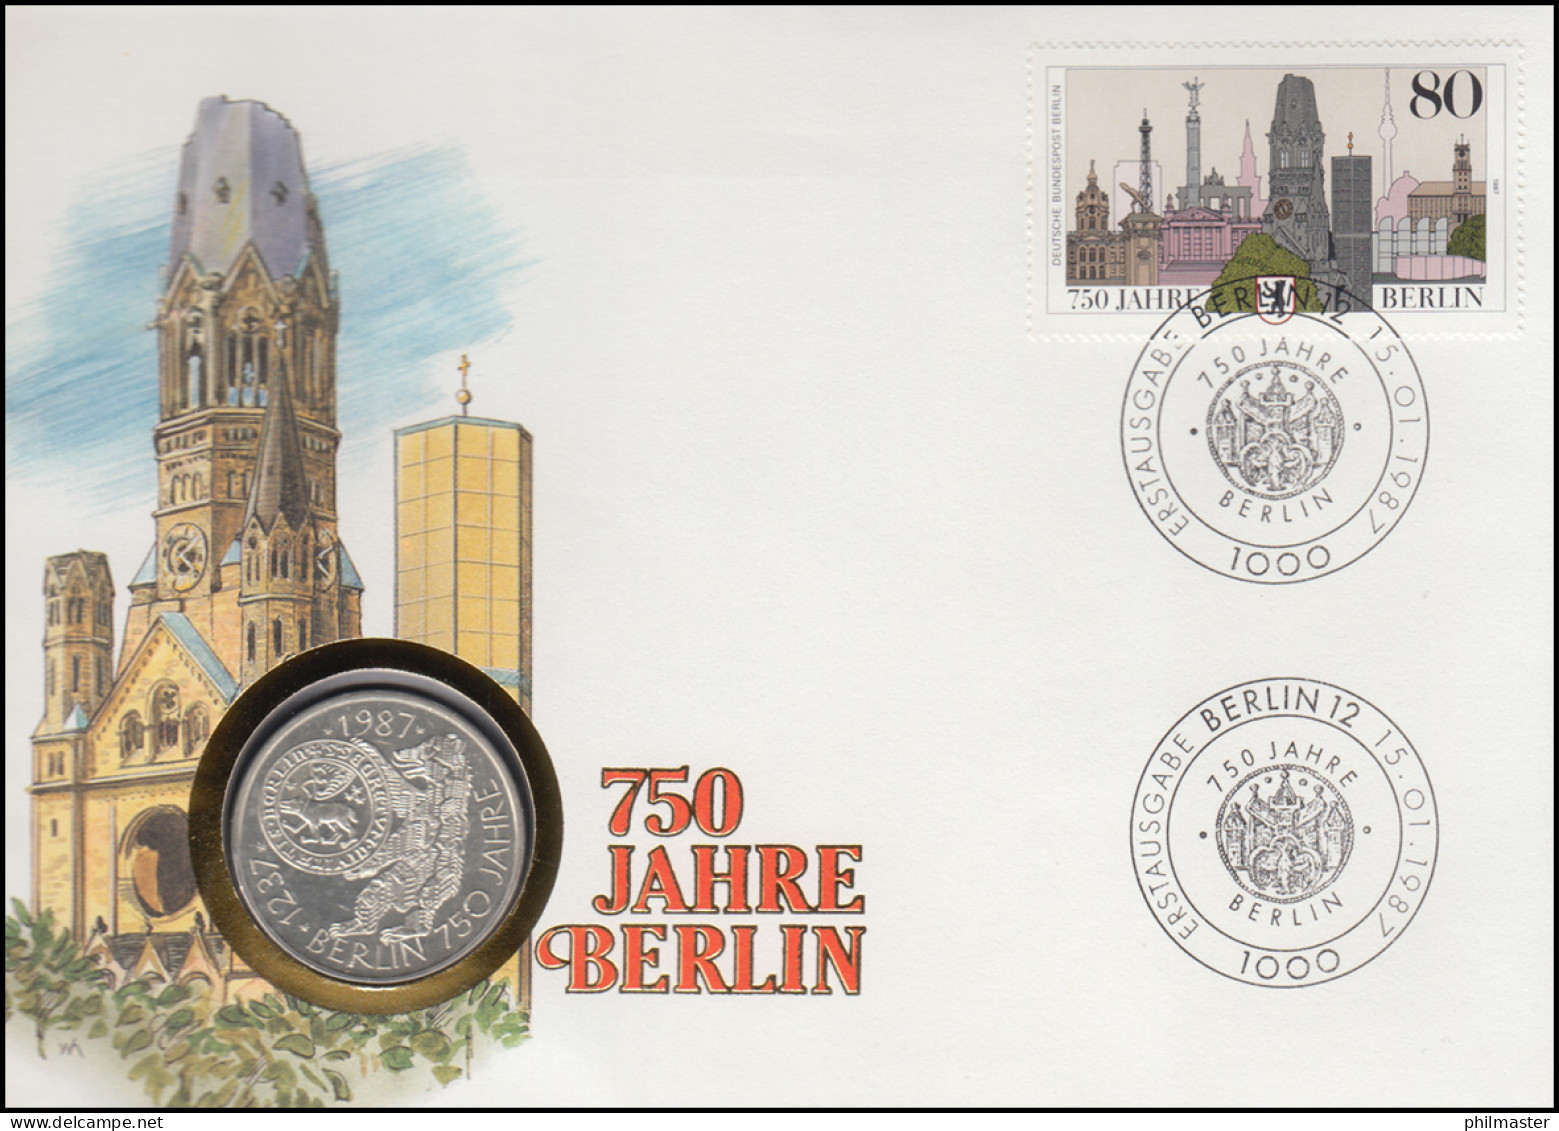 Numisbrief 750 Jahre Berlin, 10 DM / 80 Pf., ESST Berlin 15.01.1987 - Coin Envelopes